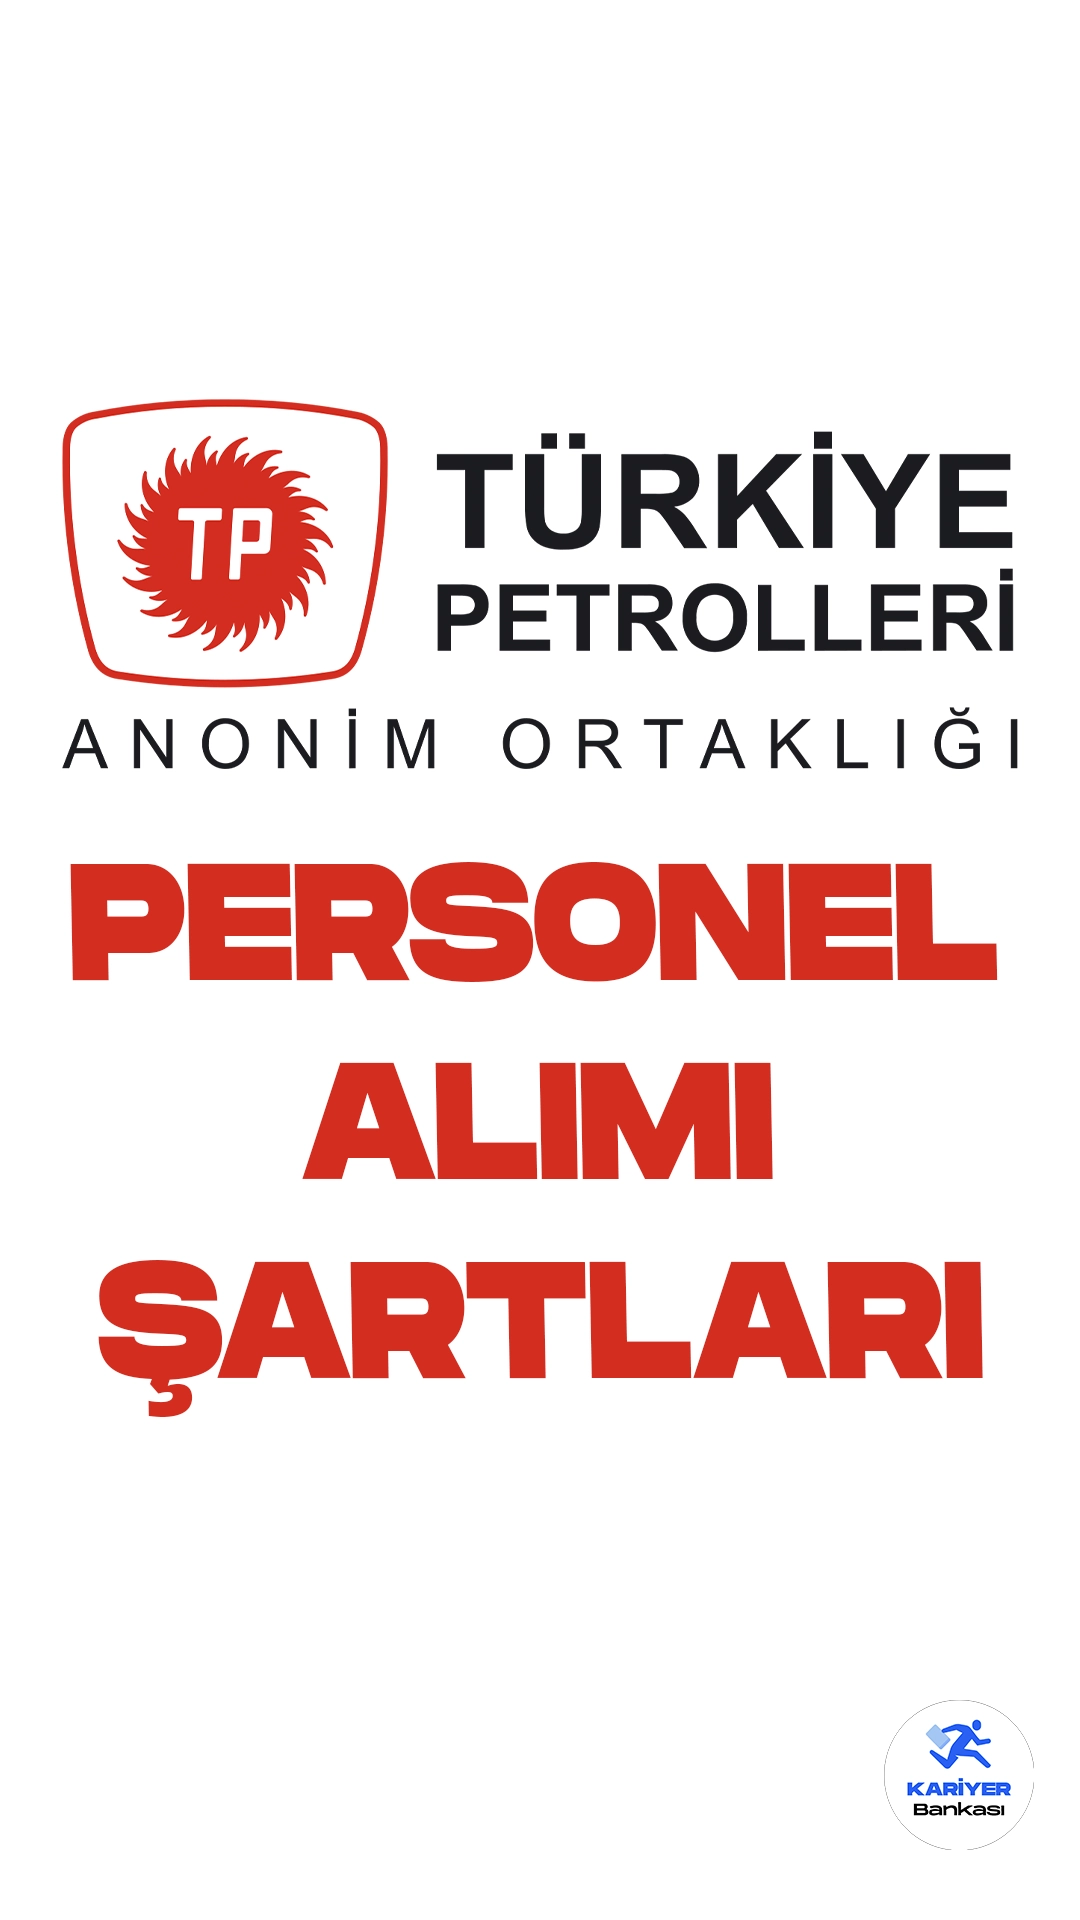 Türkiye Petrolleri Anonim Ortaklığı (TPAO) personel alımı başvuru şartları ve başvuru yerine dair detaylar bu haberimizde. Cumhurbaşkanlığı SBB'de yayımlanan duyuruda göre, TPAO'ya farklı unvanlarda olmak üzere personel alımı yapılacak. Başvurular 21 Ağustos itibarıyla alınmaya başladı. Başvuru yapacak adayların genel şartların yanı sıra, her ünvan için belirtilen özel şartları da sağlaması gerekmektedir.